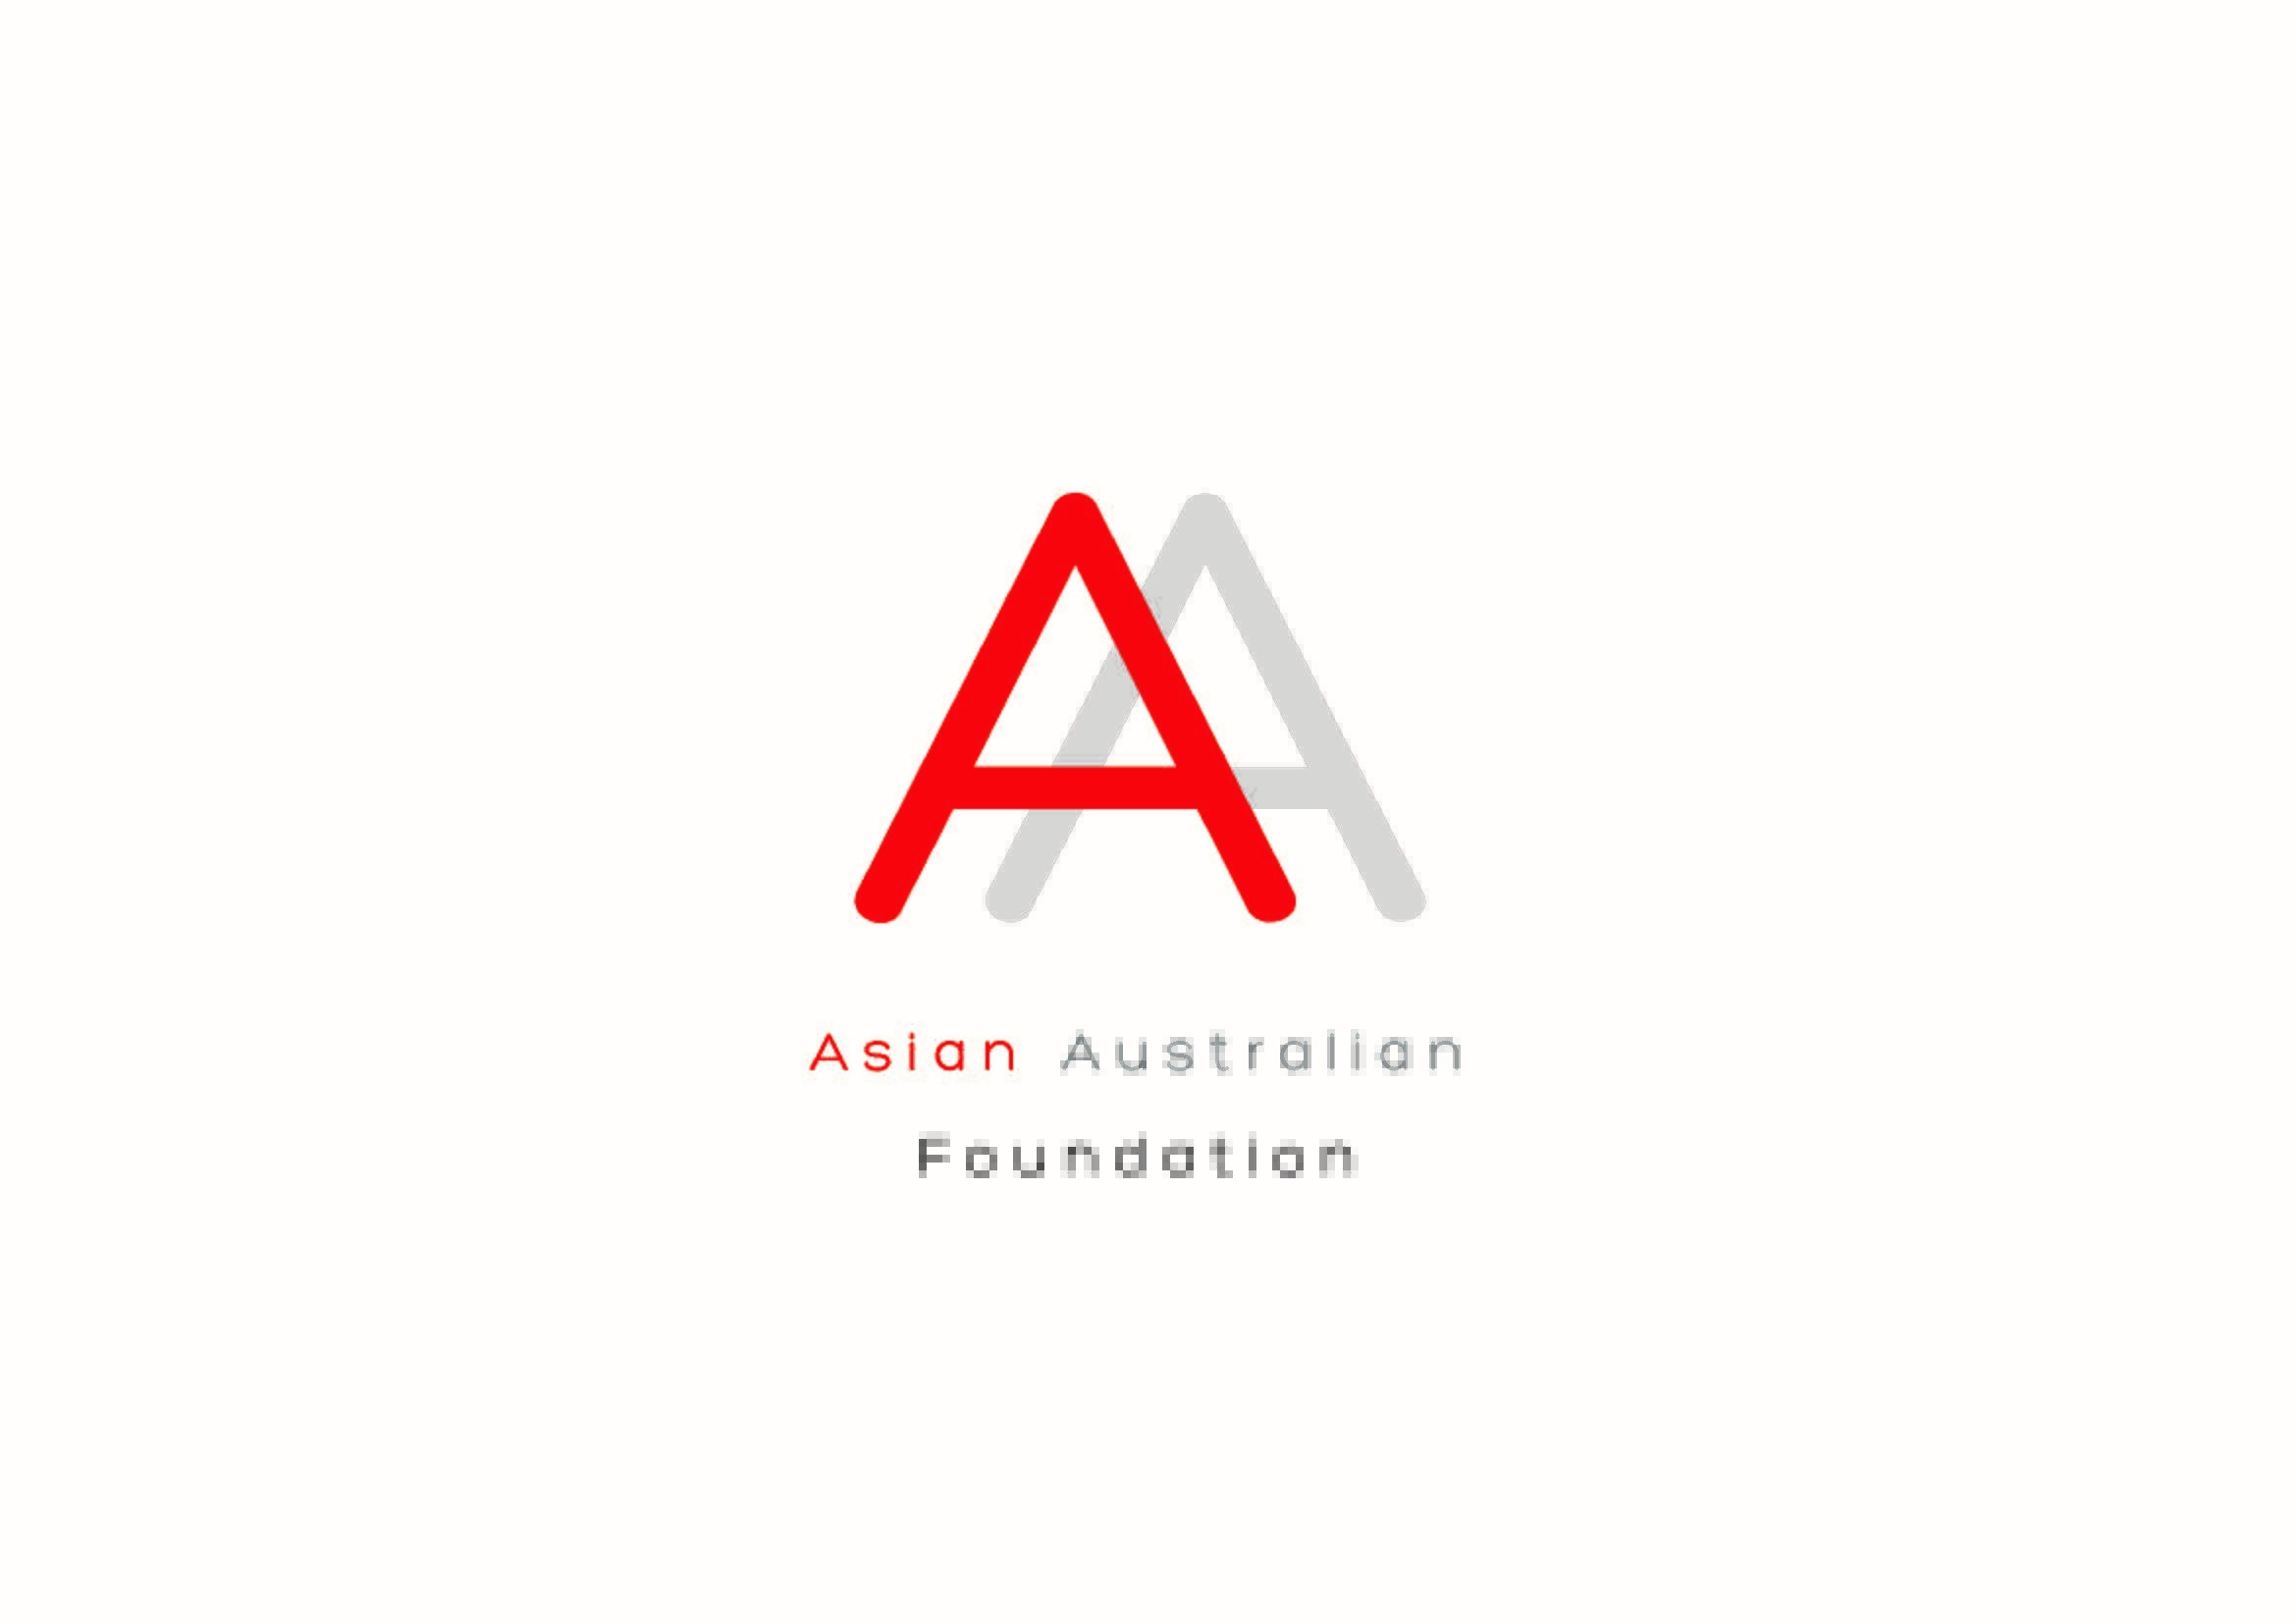 Asian Australian Foundation